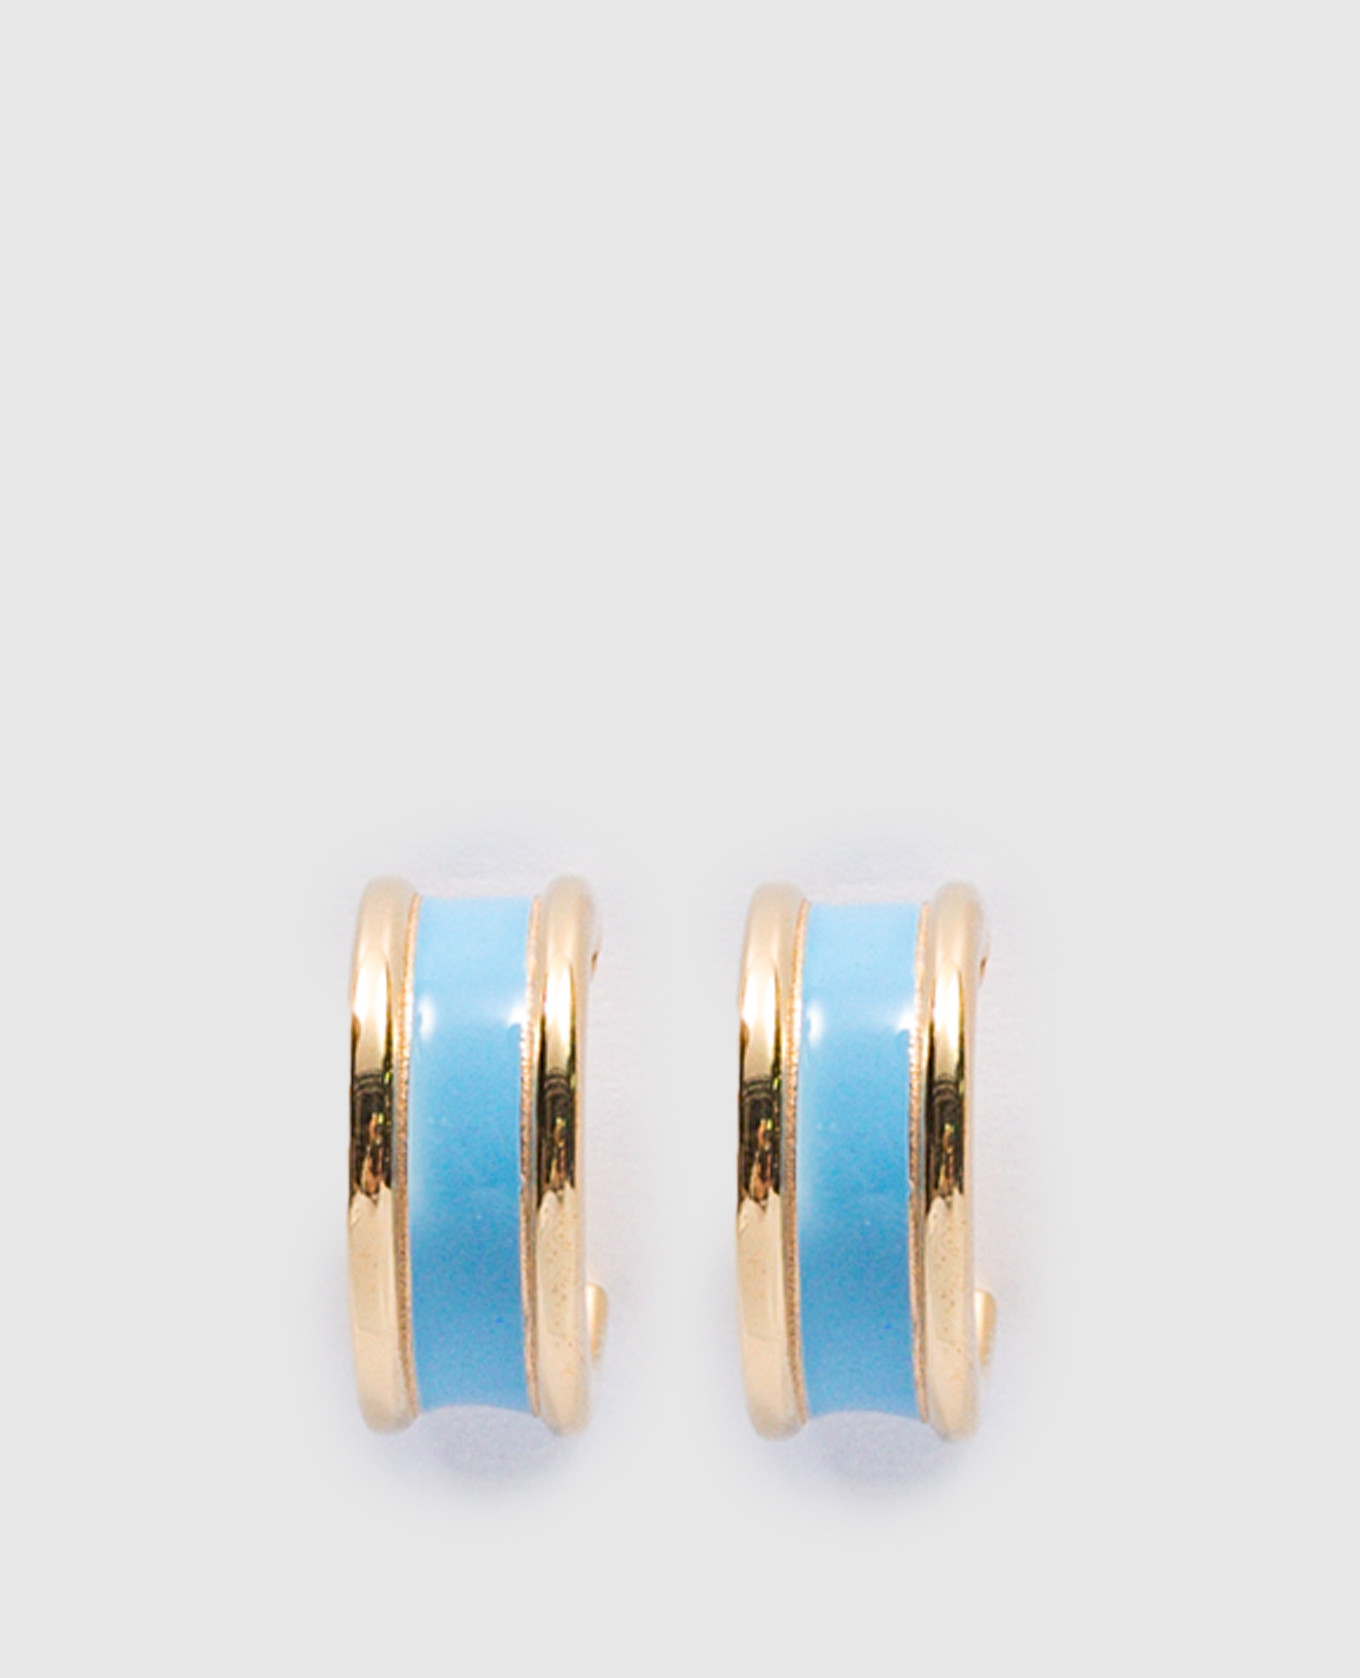 Silver Congo Double Line earrings with blue enamel